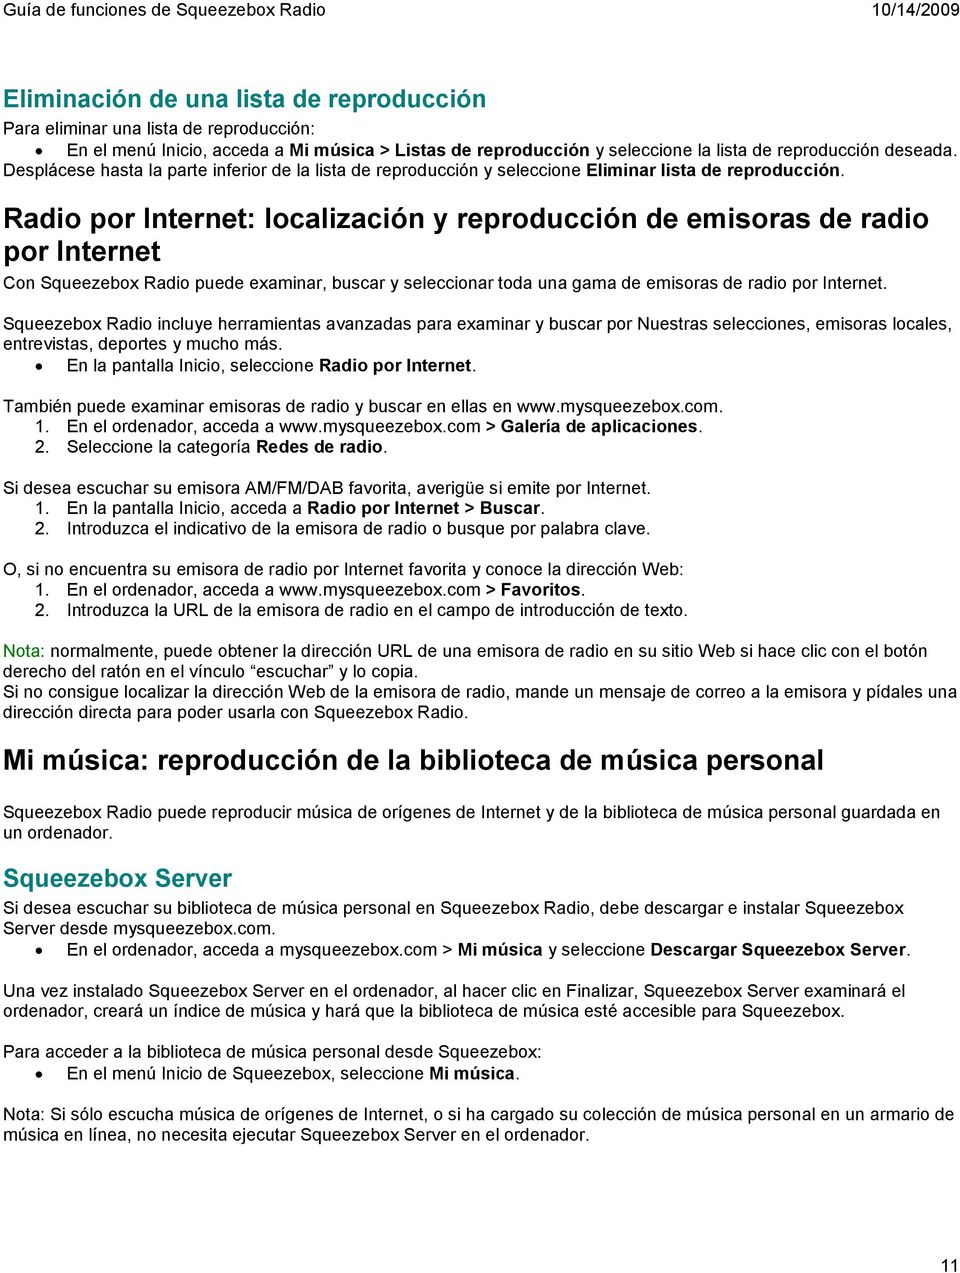 Radio por Internet: localización y reproducción de emisoras de radio por Internet Con Squeezebox Radio puede examinar, buscar y seleccionar toda una gama de emisoras de radio por Internet.